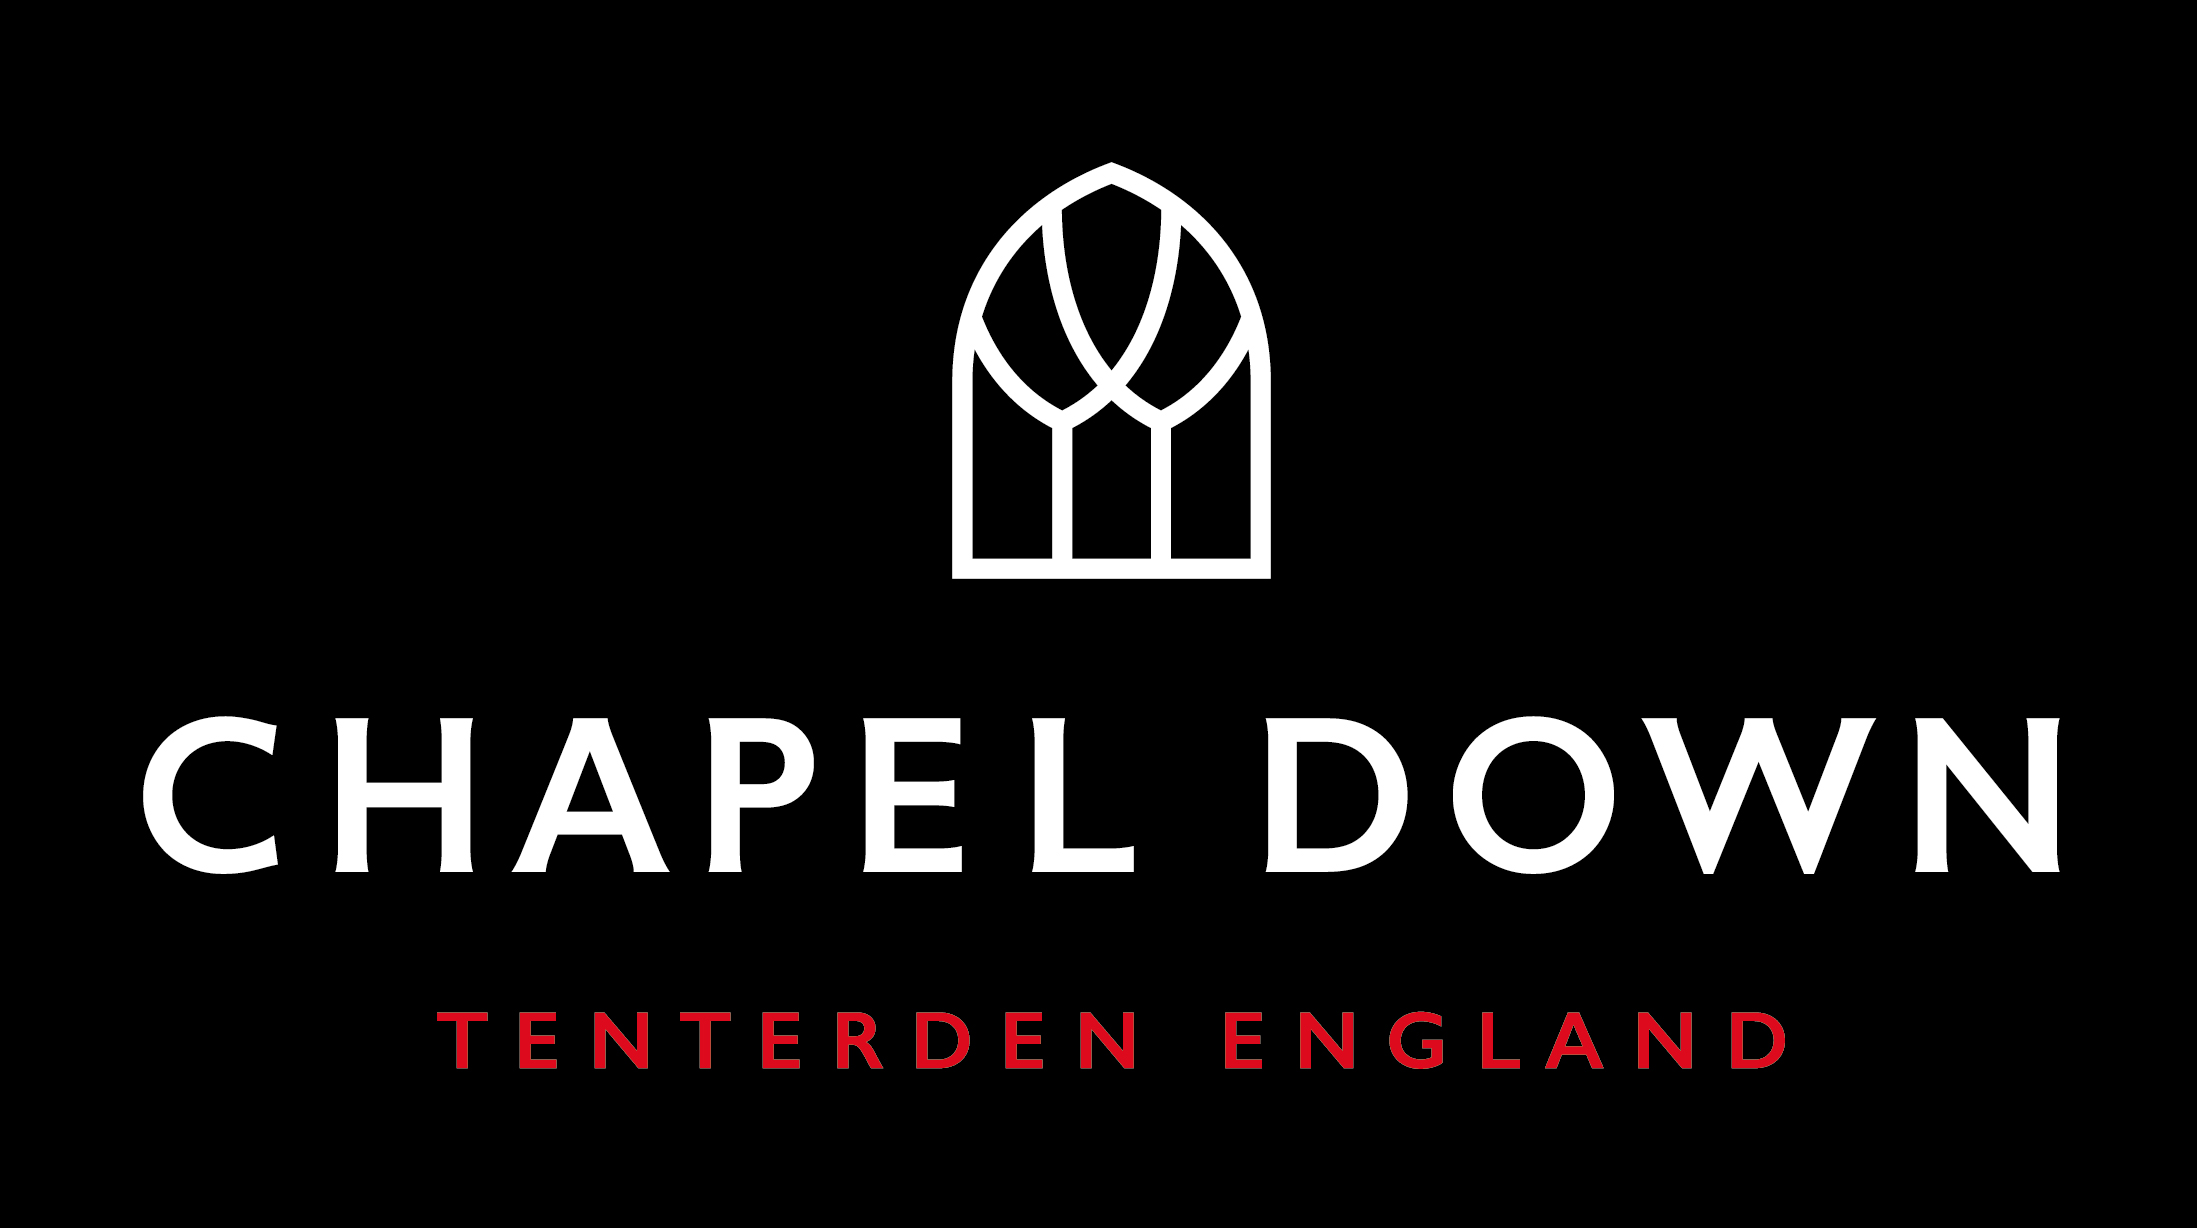 Chapeldown logo